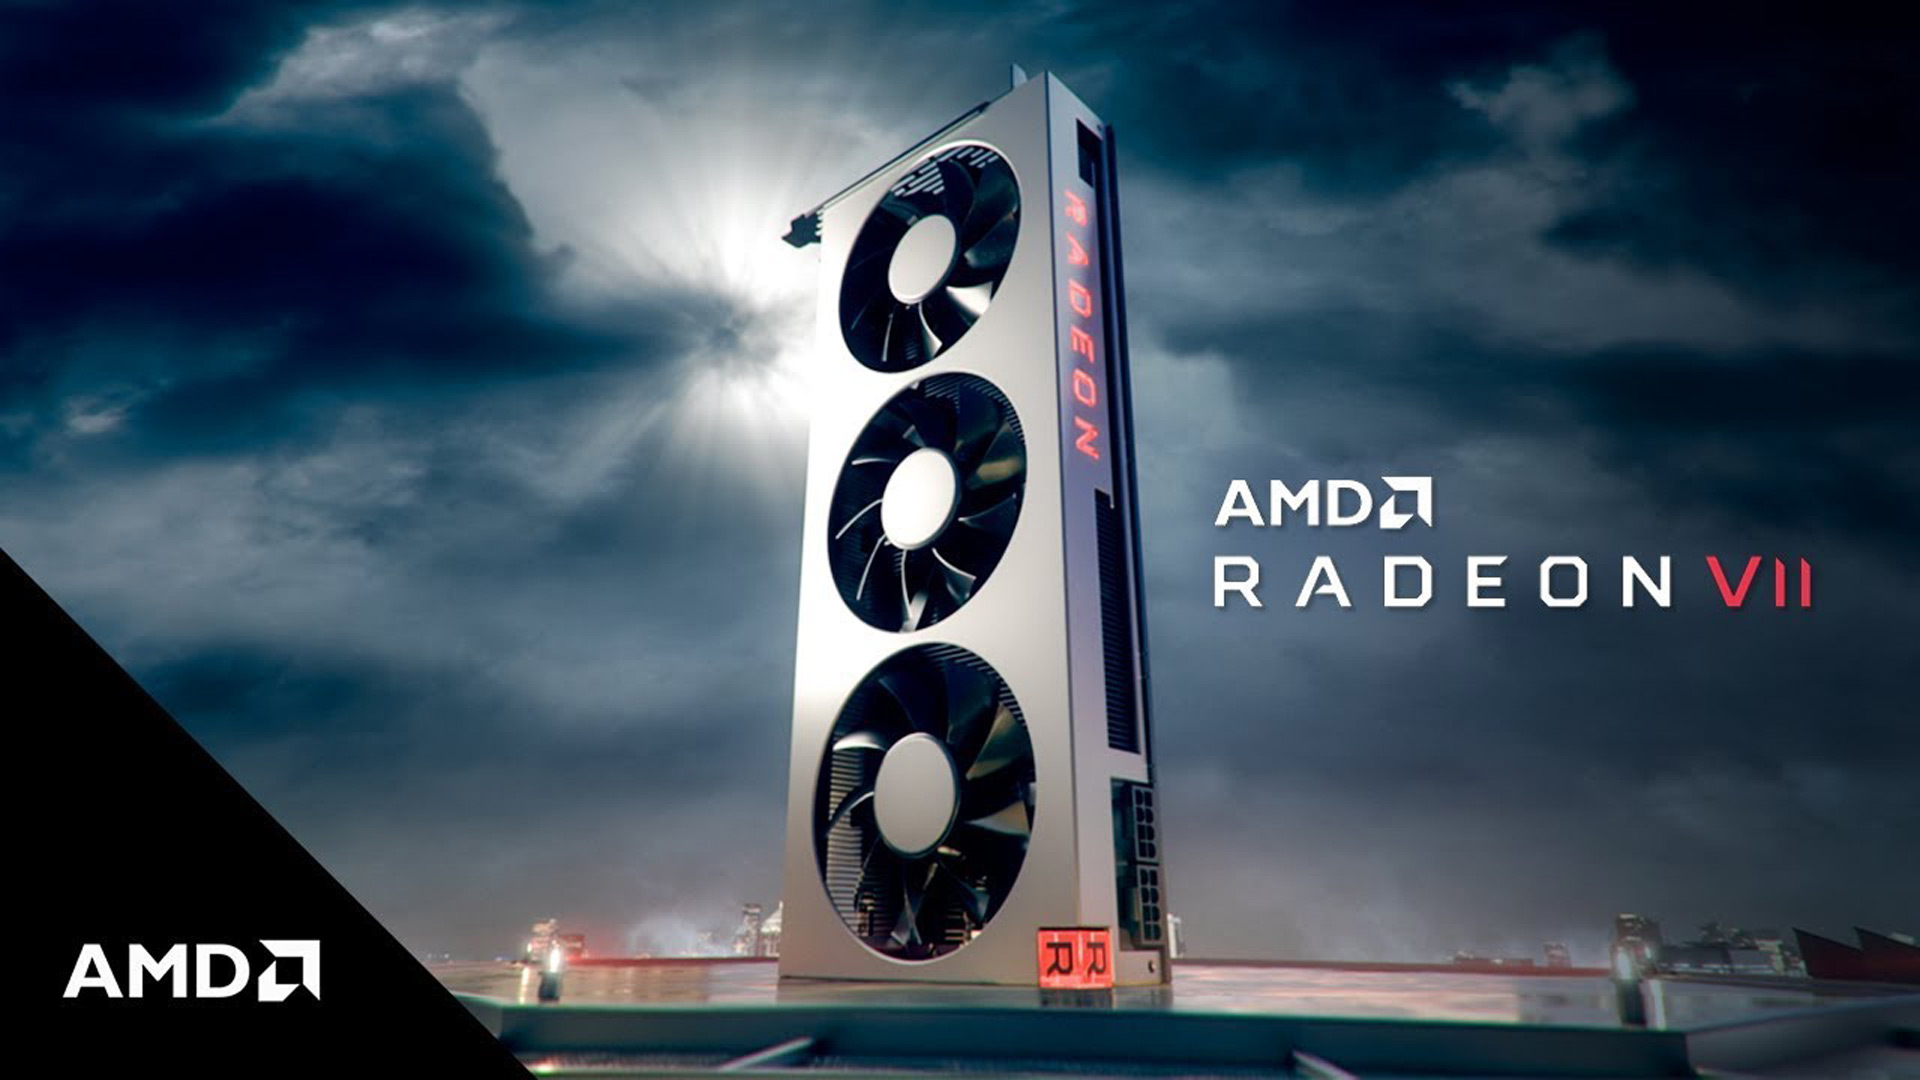 AMD presentó Radeon VII, y es la primera GPU gamer a 7nm